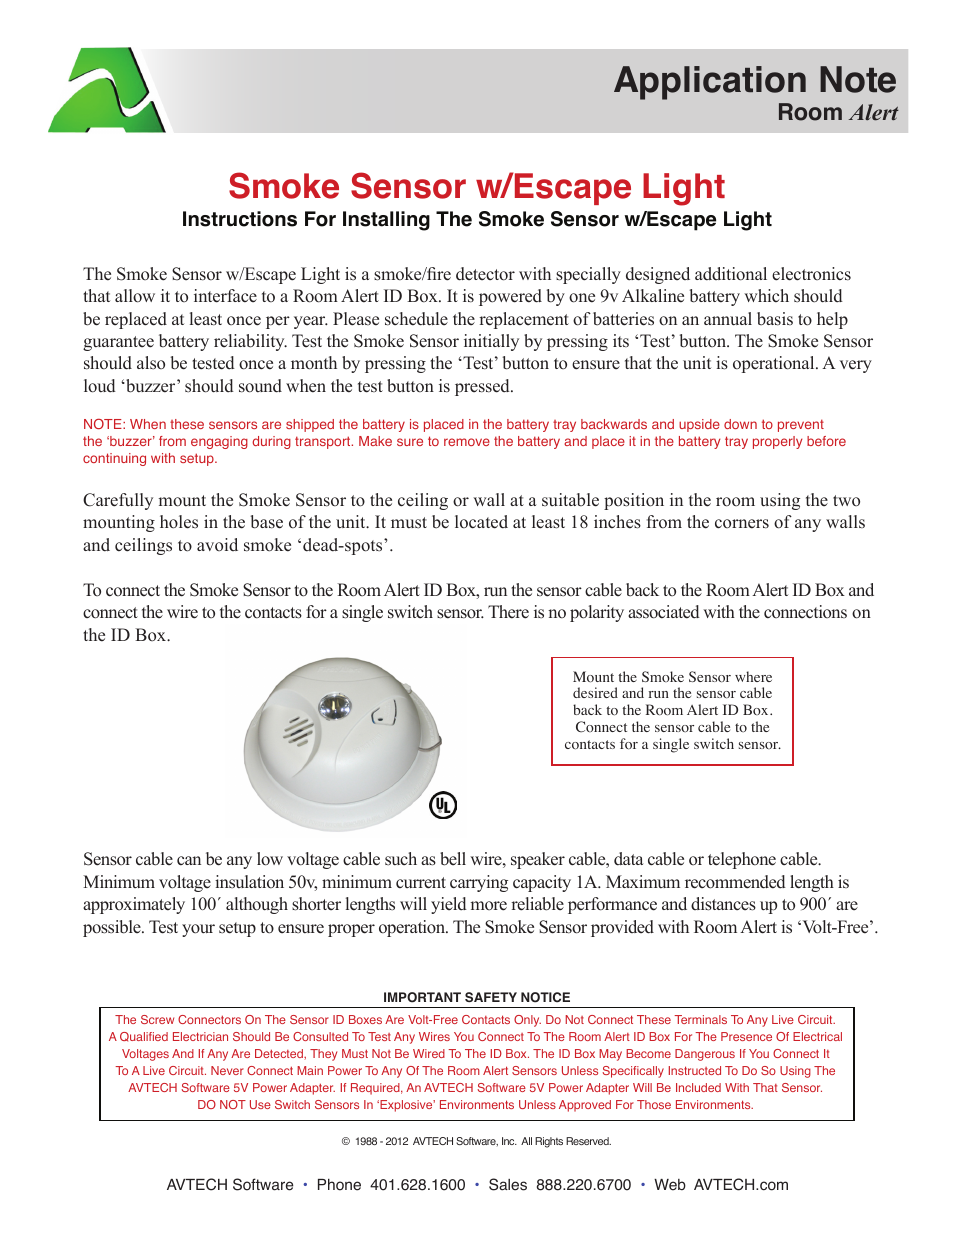 Smoke Sensor w_Escape Light (RMA-SS1-SEN)